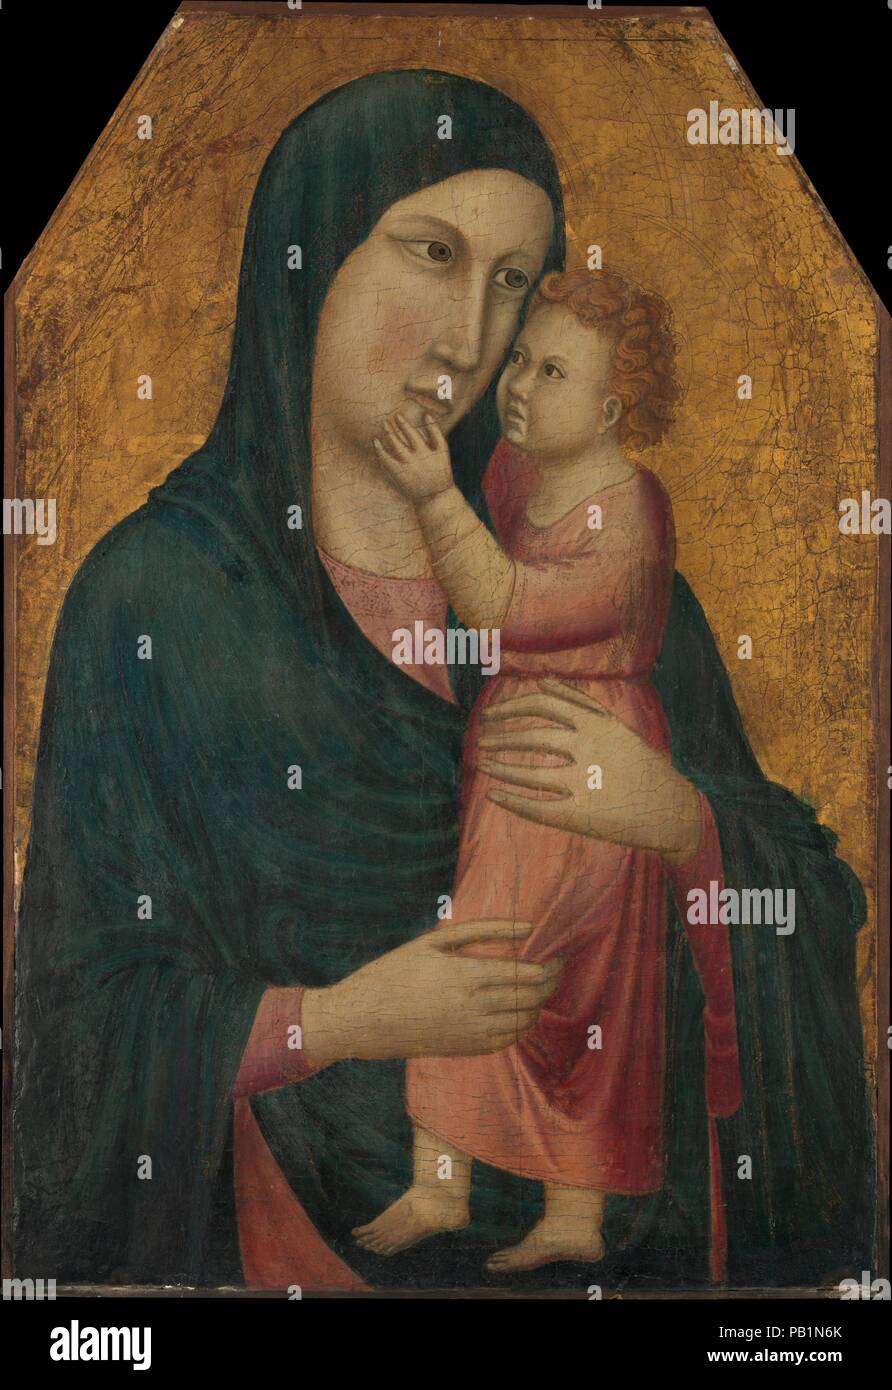 La Madonna e il bambino. Artista: italiano (fiorentino o padovano) pittore (Cheyo da Firenze?) (ca. 1307-17). Dimensioni: 24 1/4 x 16 1/2 in. (61,5 x 41,9 cm). L'attribuzione di questo danneggiato ma appassionante foto--un lavoro di rara intensità espressiva--ha lasciato perplessi gli studiosi. Esso può essere da un inseguitore padovano di Giotto e forse fu dipinta su 1310-15--non molto tempo dopo la Giotto termina la sua celebre ciclo di affreschi nella cappella Arena, Padova. Il pittore ha timidamente stato associato con un ciclo di affreschi nella casa del Capitolo della grande Abbazia di Pomposa, vicino a Ferrara. Il pannello è stato tagliato su un Foto Stock